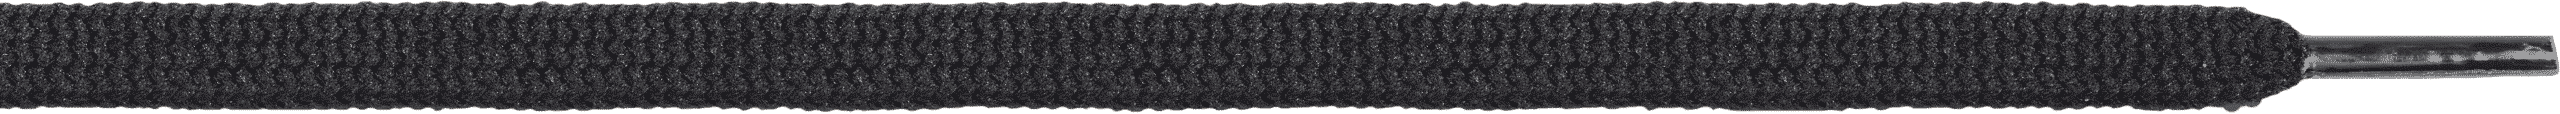 B209 polyeser flat lace black